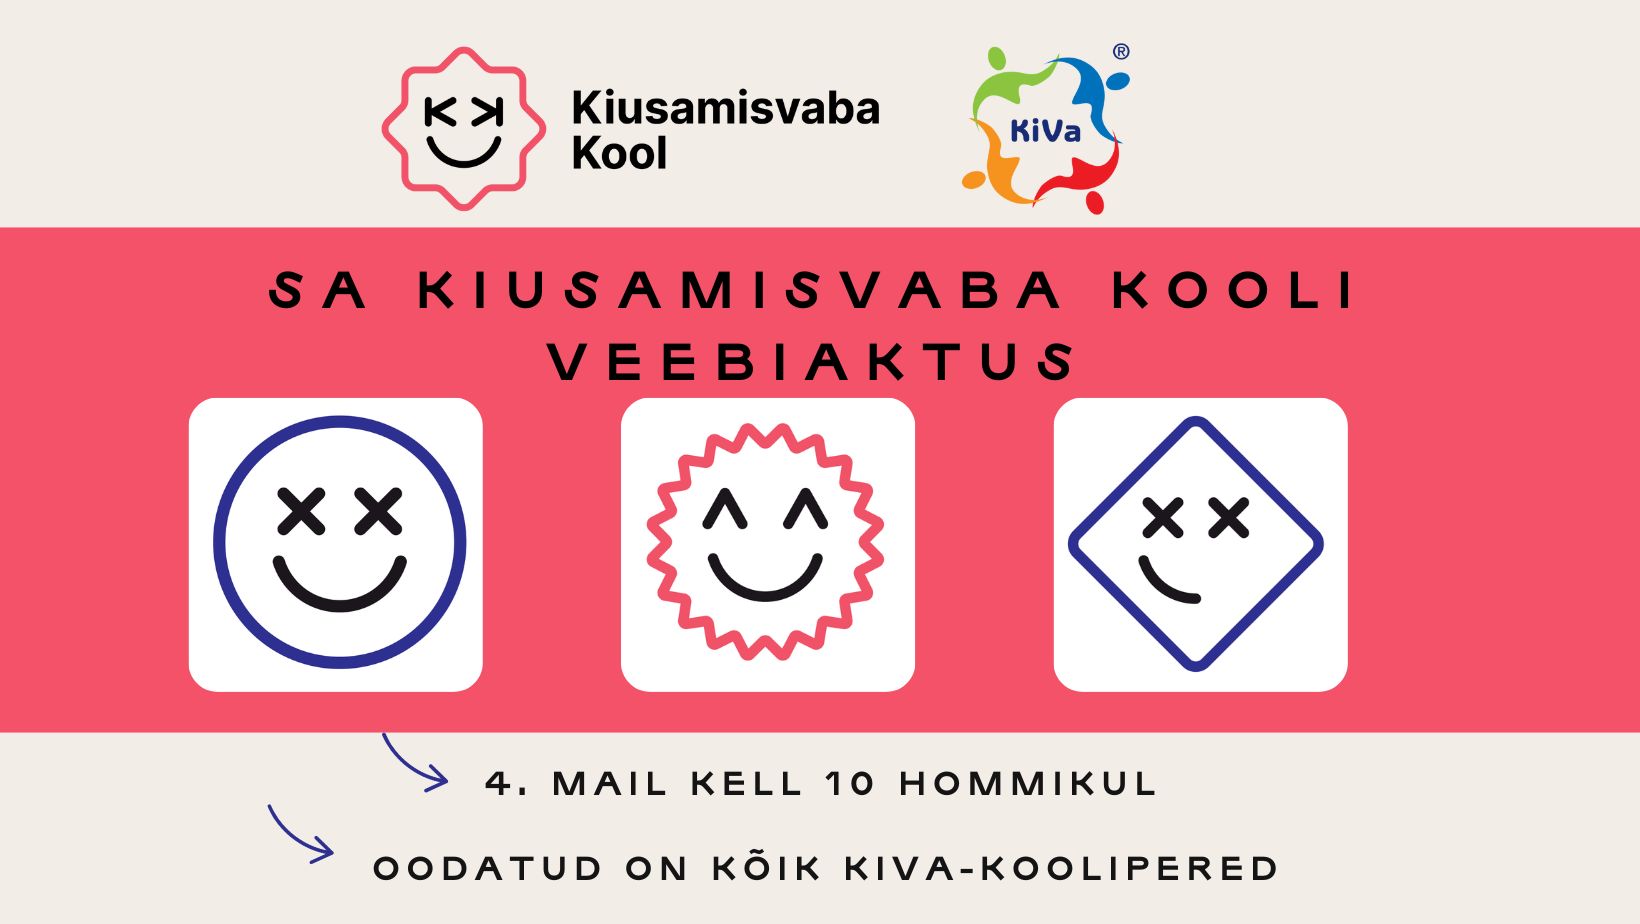 4 мая состоится KiVa-koolide veebiaktus – виртуальное торжественное собрание для всех школ KiVa Эстонии